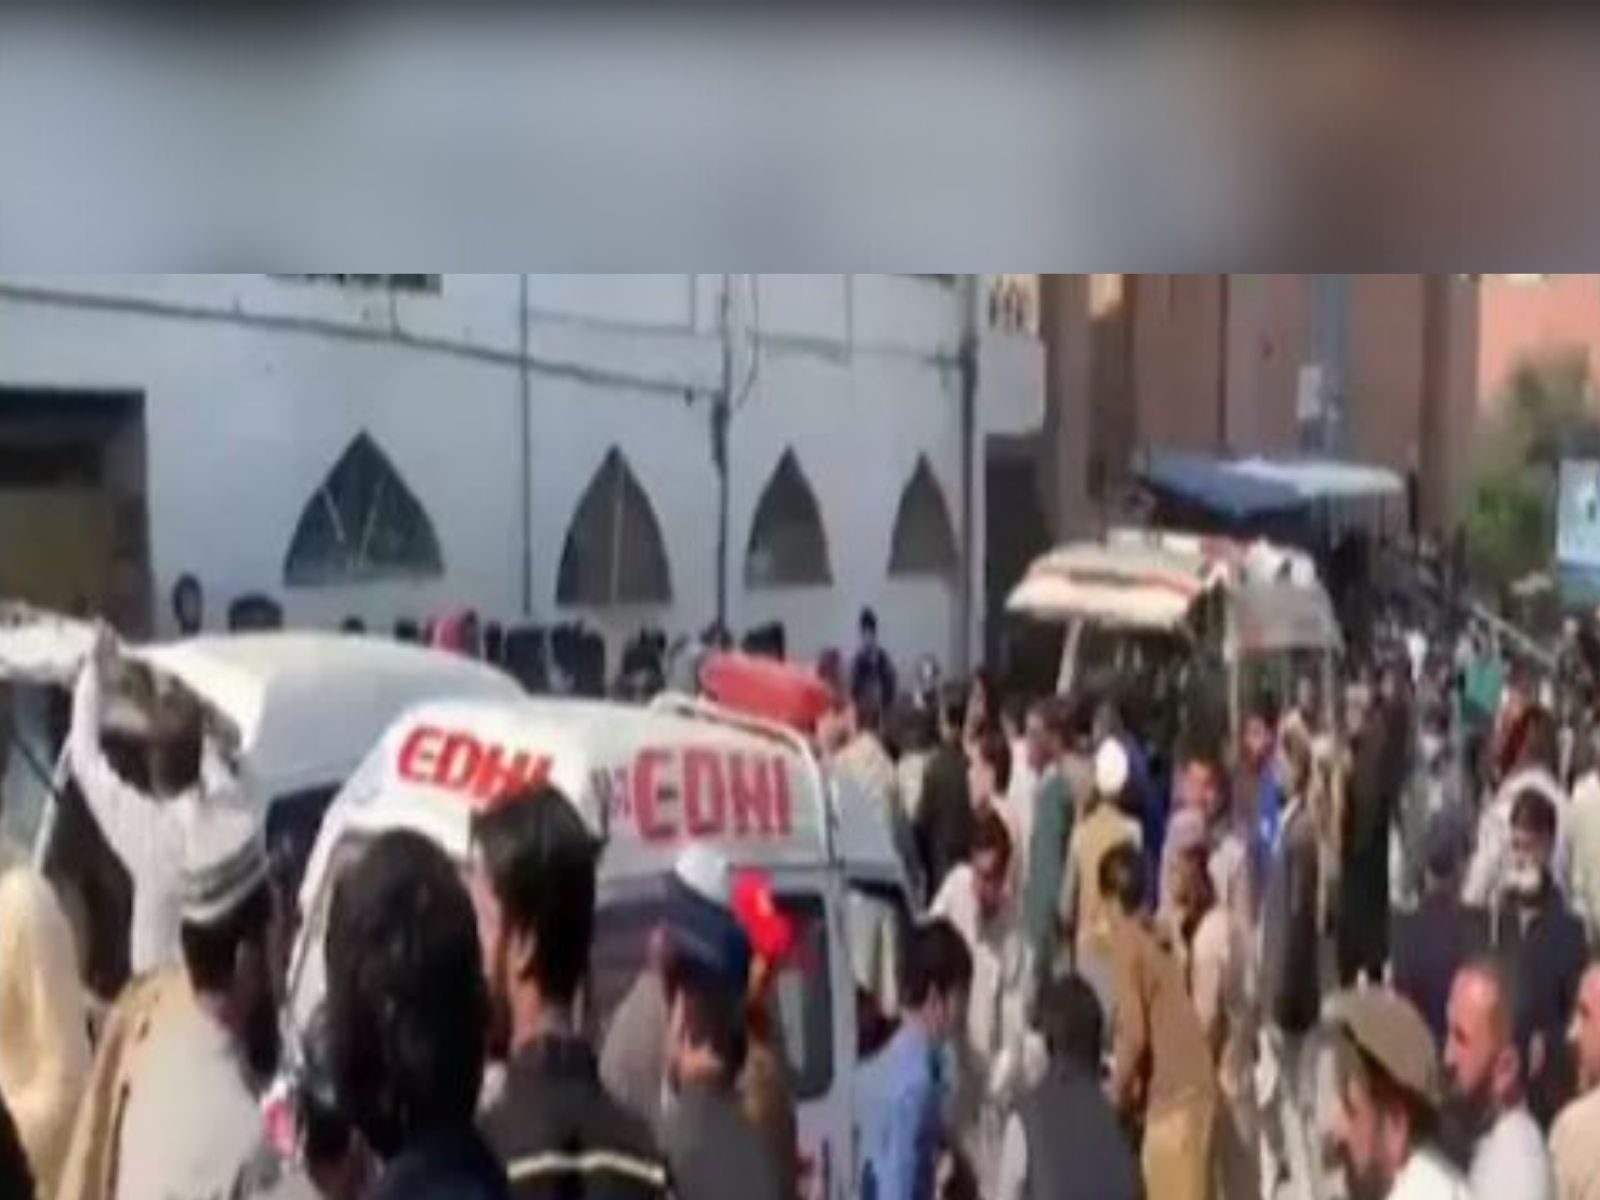 Pakistan: ਪੇਸ਼ਾਵਰ ਦੀ ਮਸਜਿਦ 'ਚ ਬੰਬ ਧਮਾਕਾ, 30 ਲੋਕਾਂ ਦੀ ਗਈ ਜਾਨ ਤੇ ਦਰਜਨ ਜ਼ਖਮੀ